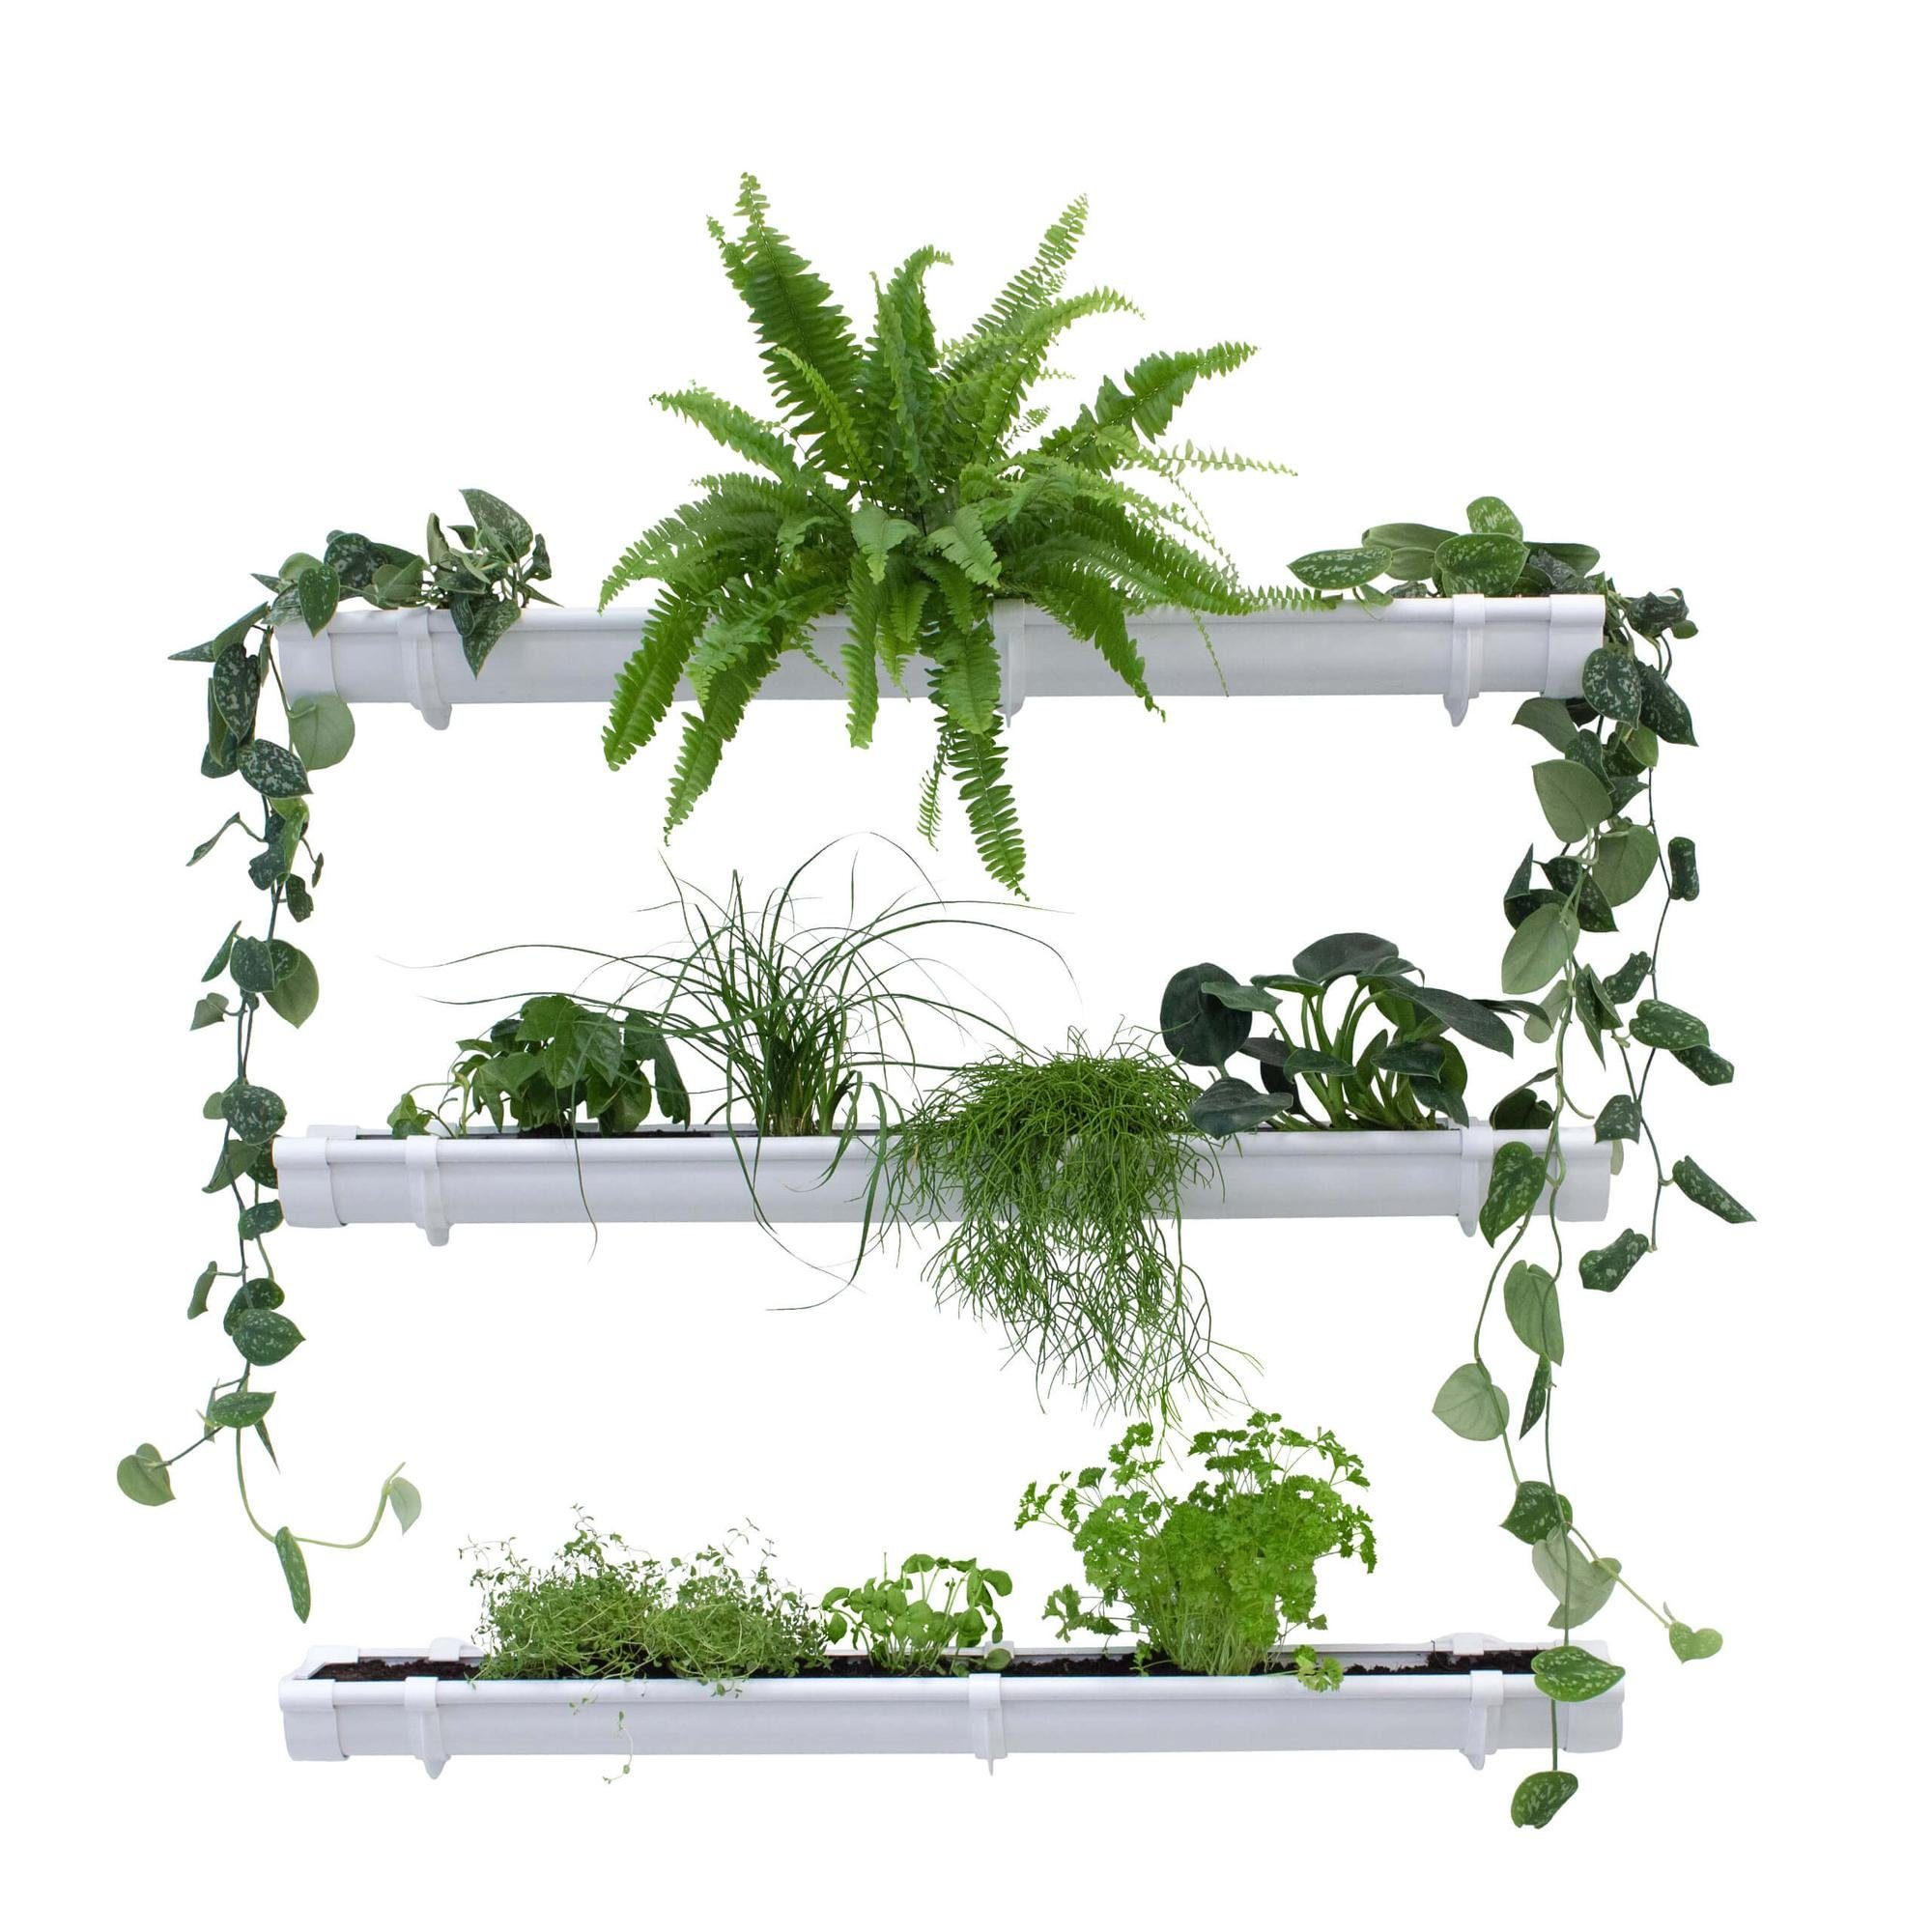 Jardinion Blumentopf (Grüne Pflanzenwand, Vertikaler Garten, 1 St), Platzsparende Gartengestaltung, Pflanzenregal für Innen und Außen Weiß